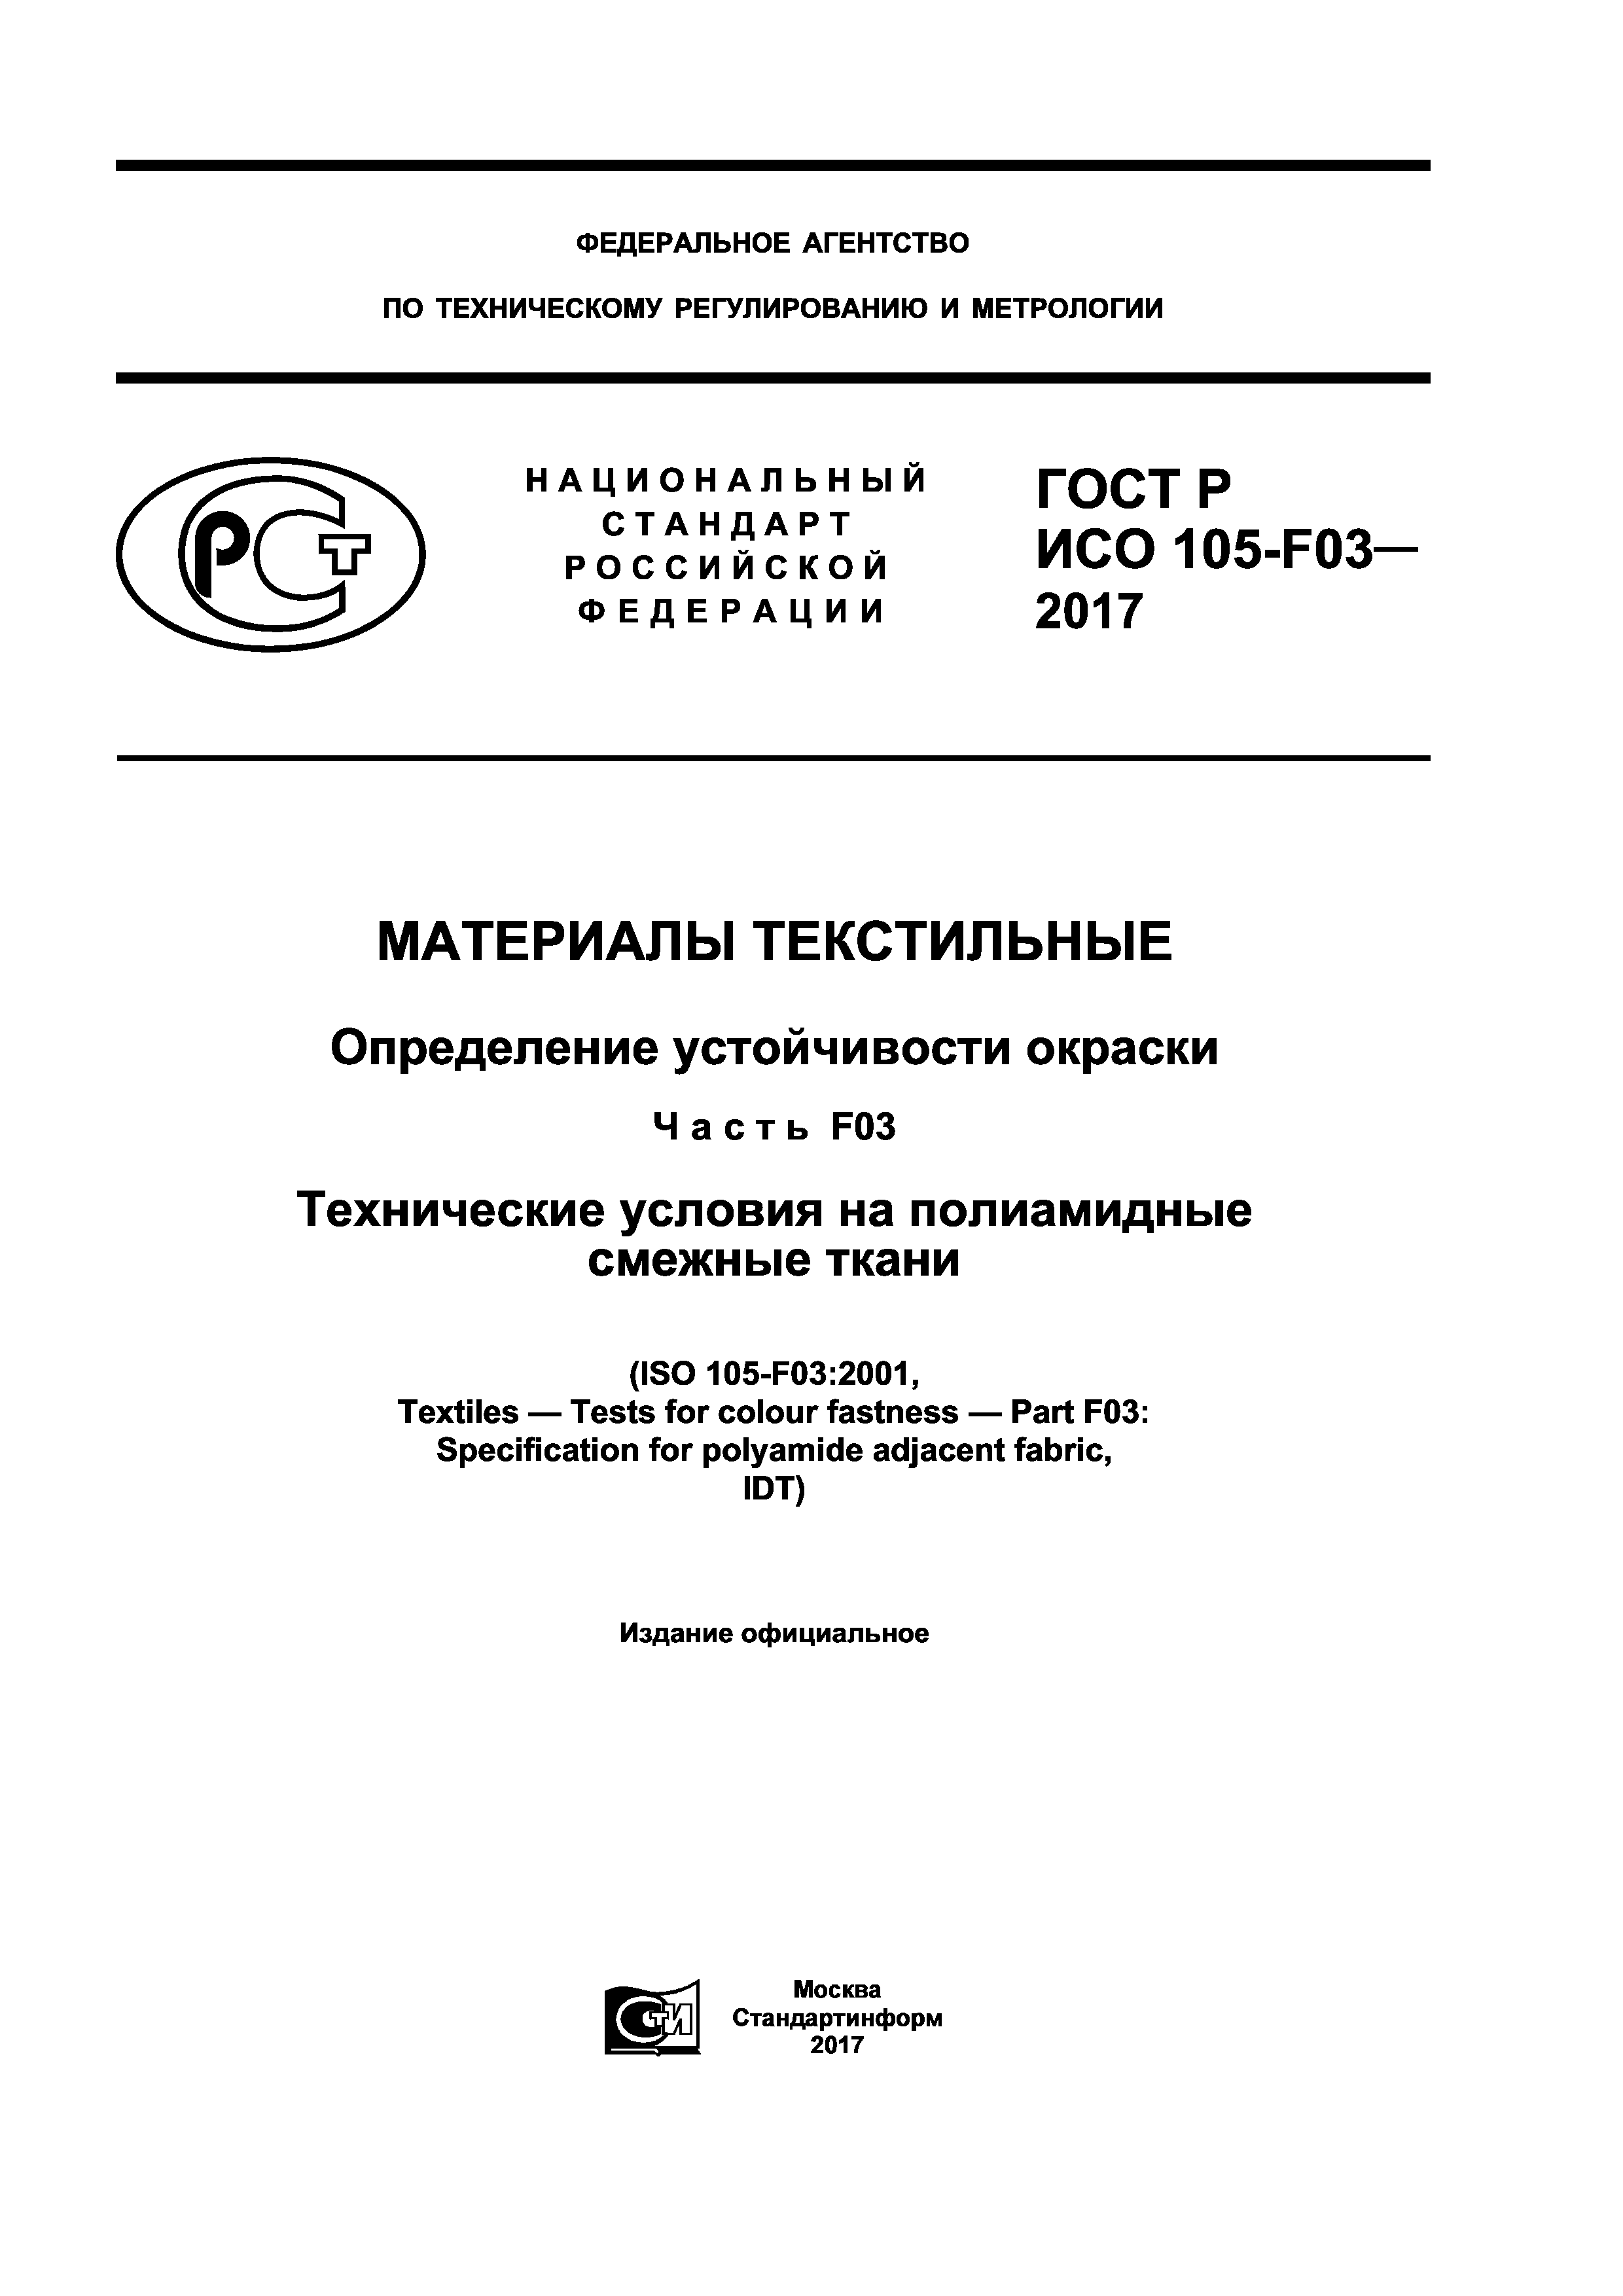 ГОСТ Р ИСО 105-F03-2017